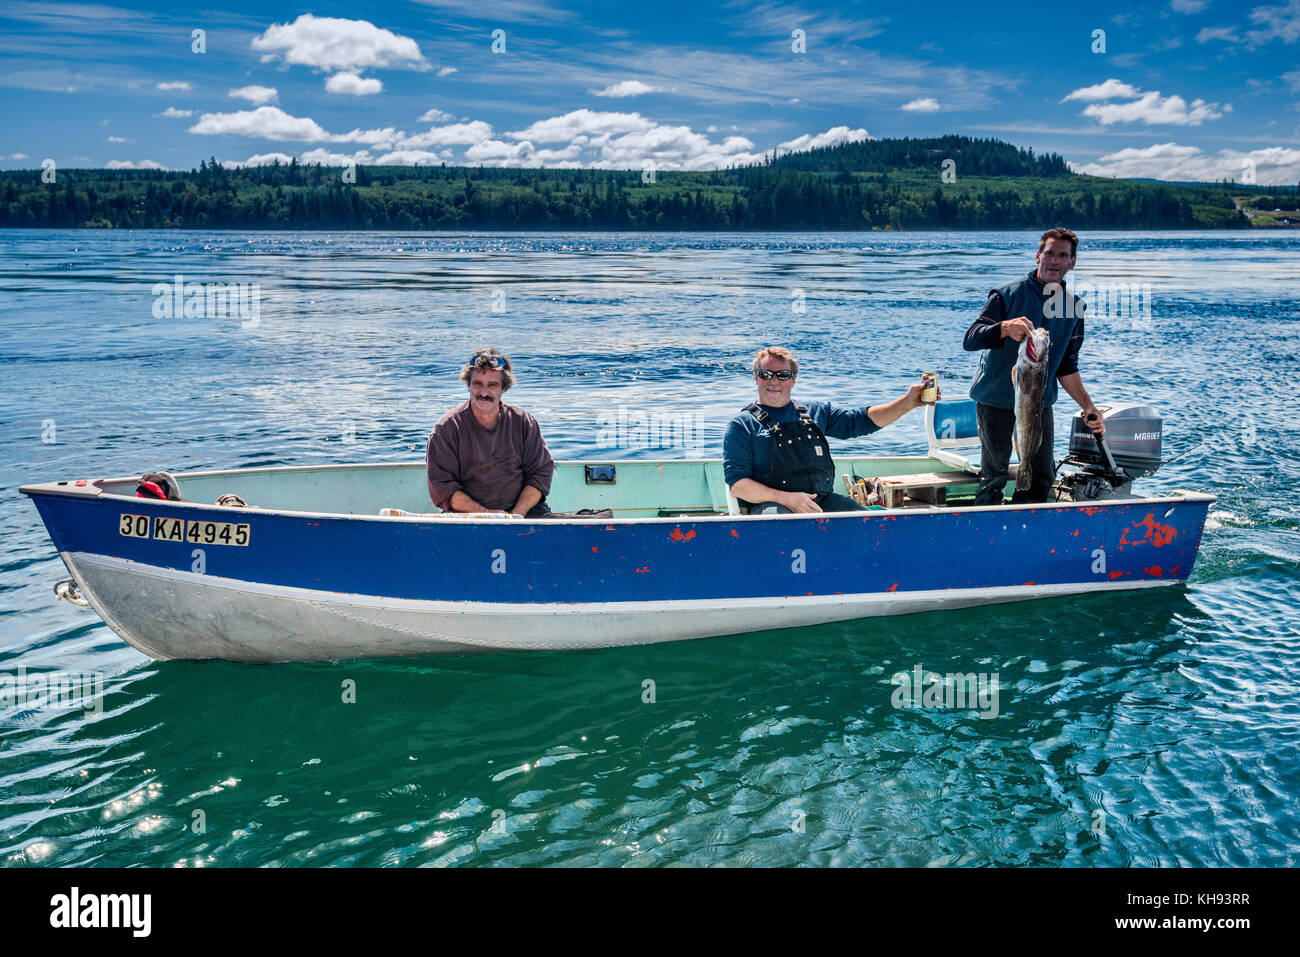 Tre uomini che mostravano pesci che pescarono, salmone, in piccola barca, nello stretto di Johnstone fuori dell'isola di Vancouver, Columbia Britannica, Canada Foto Stock